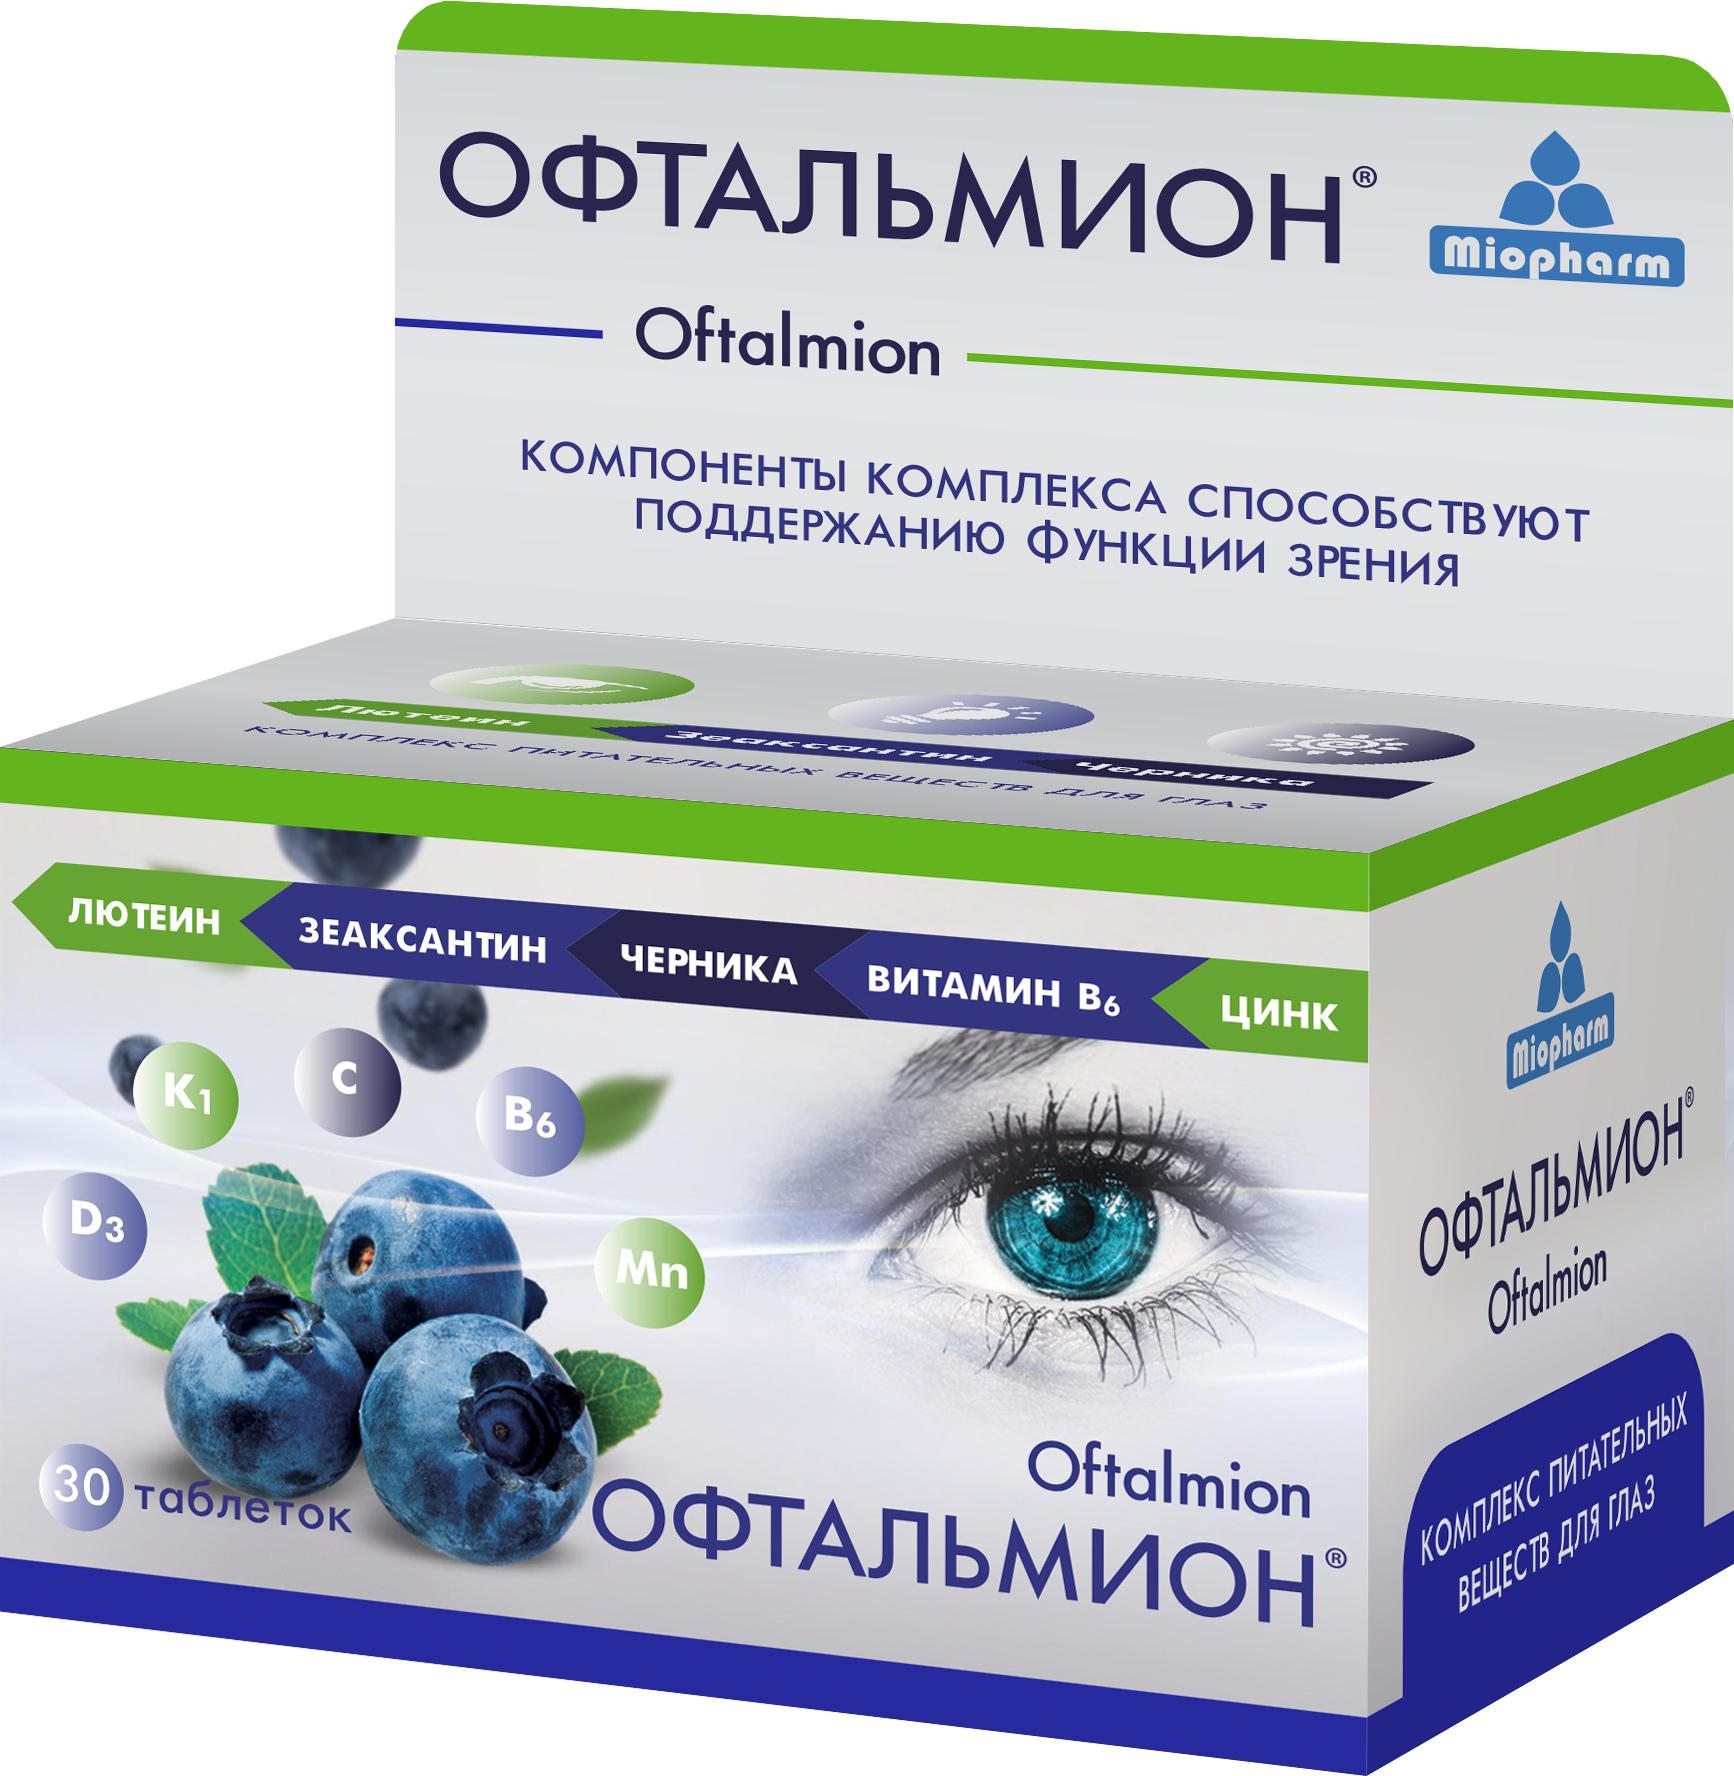 Офтальмион Миофарм 30 таб. Лютеин + Зеаксантин + Черника + витамины для глаз и зрения. — купить в интернет-магазине по низкой цене на Яндекс Маркете